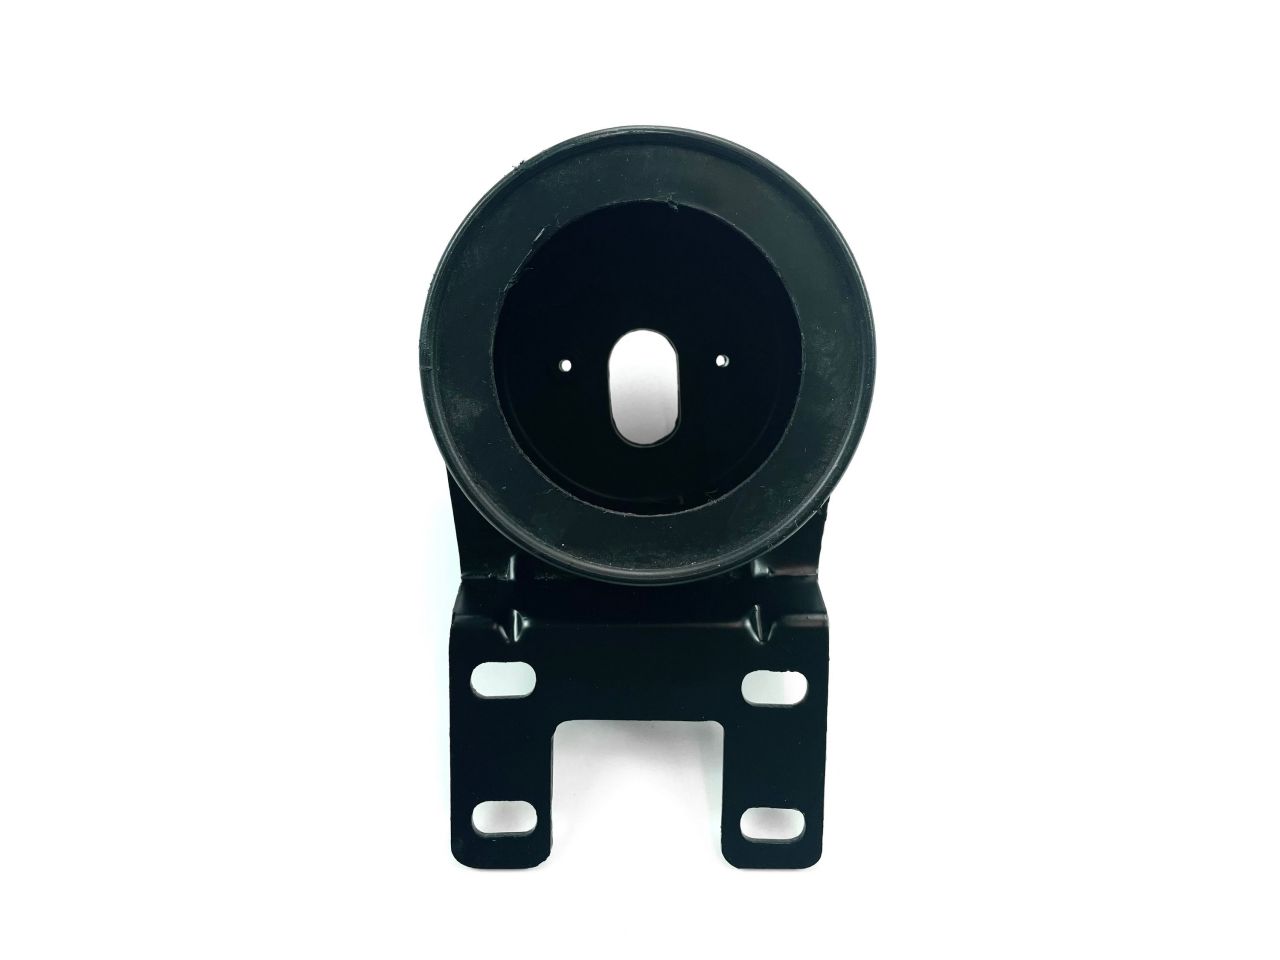 Tacho Rahmen Halterung 60 mm in schwarz Gehäuse von kein Hersteller